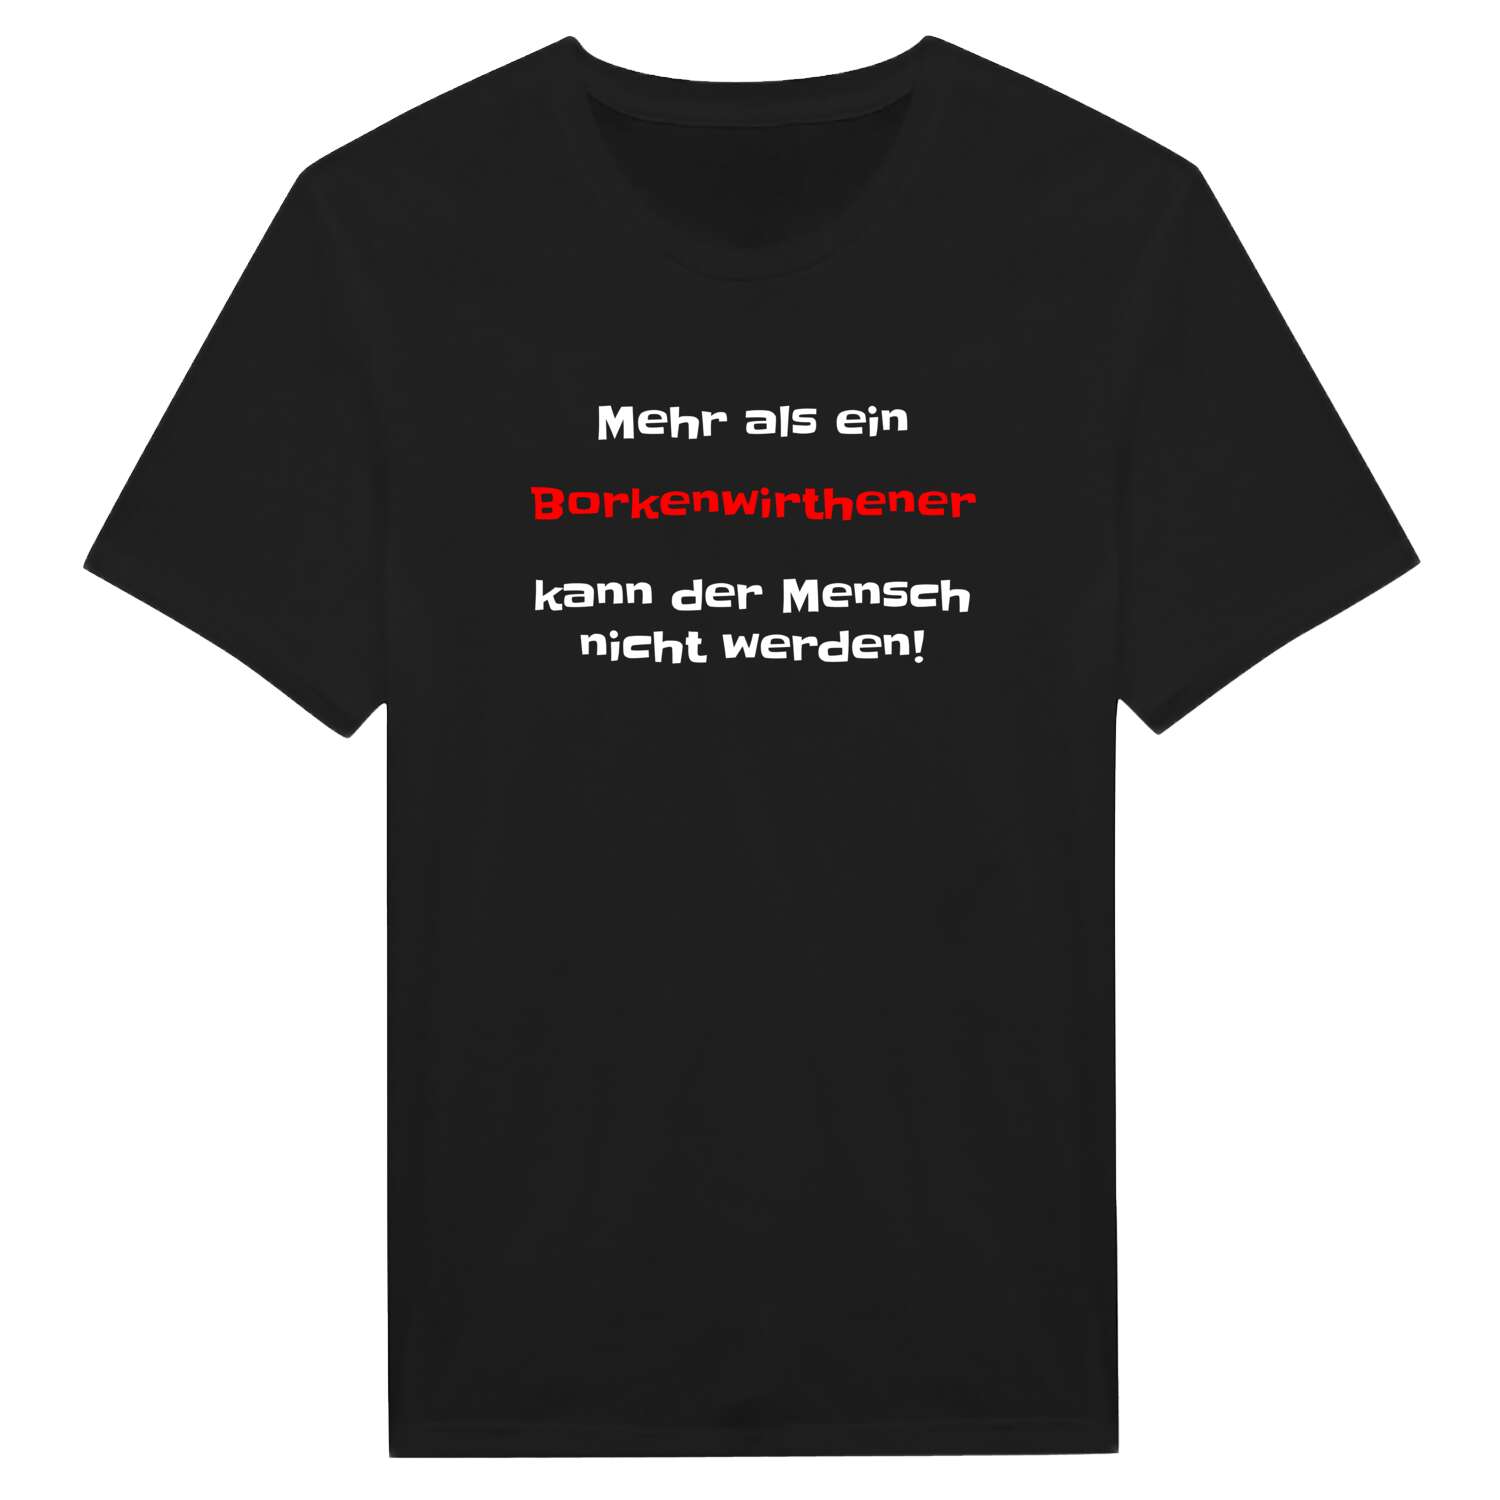 Borkenwirthe T-Shirt »Mehr als ein«